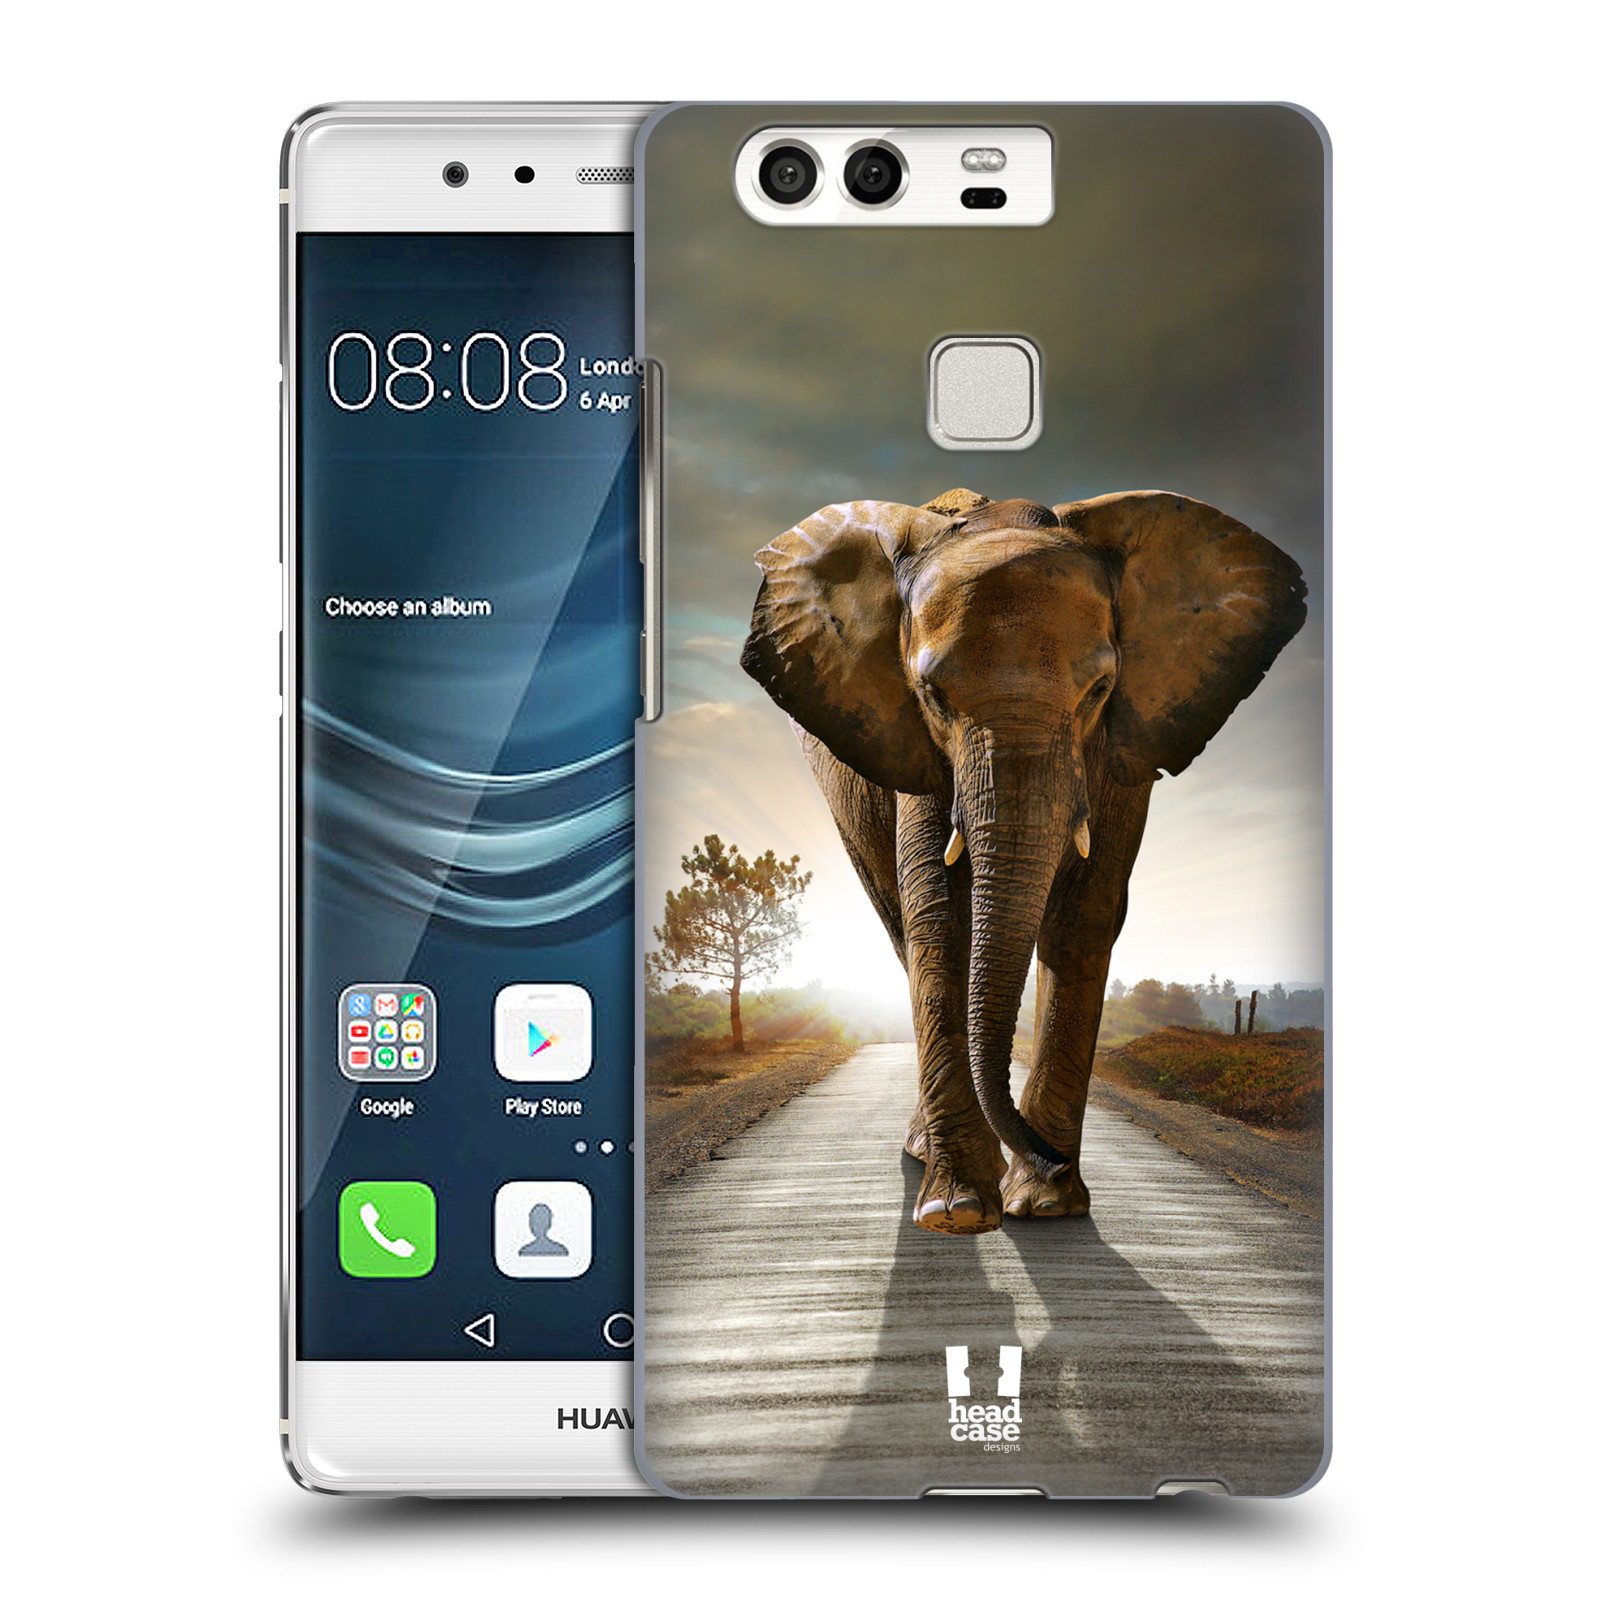 HEAD CASE plastový obal na mobil Huawei P9 / P9 DUAL SIM vzor Divočina, Divoký život a zvířata foto AFRIKA KRÁČEJÍCI SLON